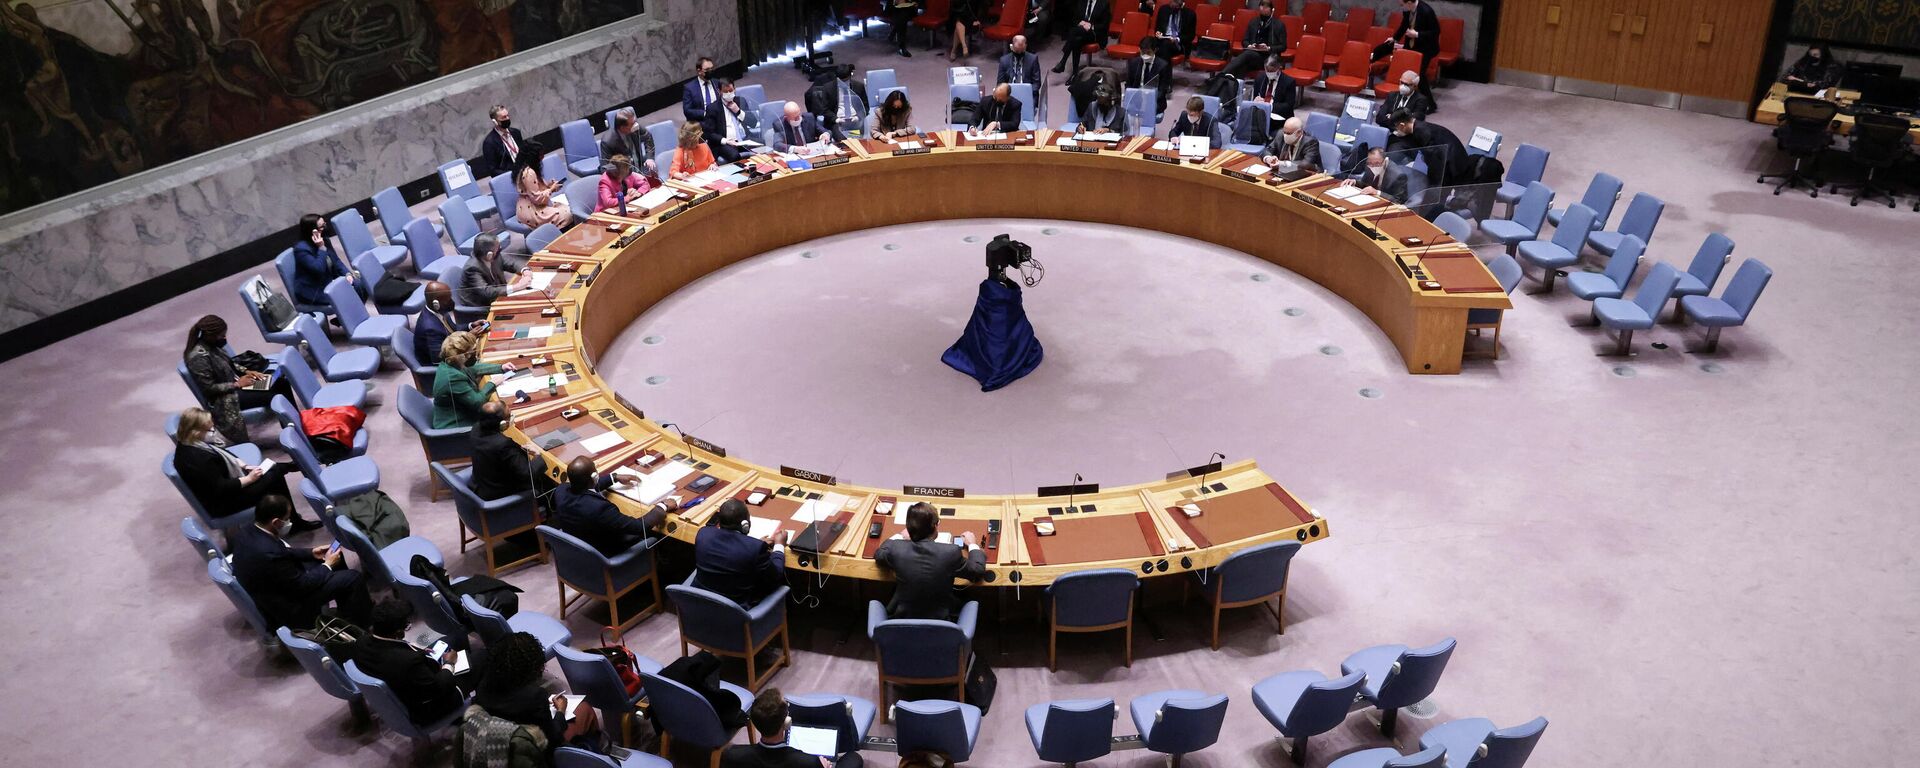 جلسة نقاش مجلس الأمن الدولي حول أزمة أوكرانيا وروسيا، الأمم المتحدة، نيويورك، الولايات المتحدة 31 يناير 2022  - سبوتنيك عربي, 1920, 23.03.2022